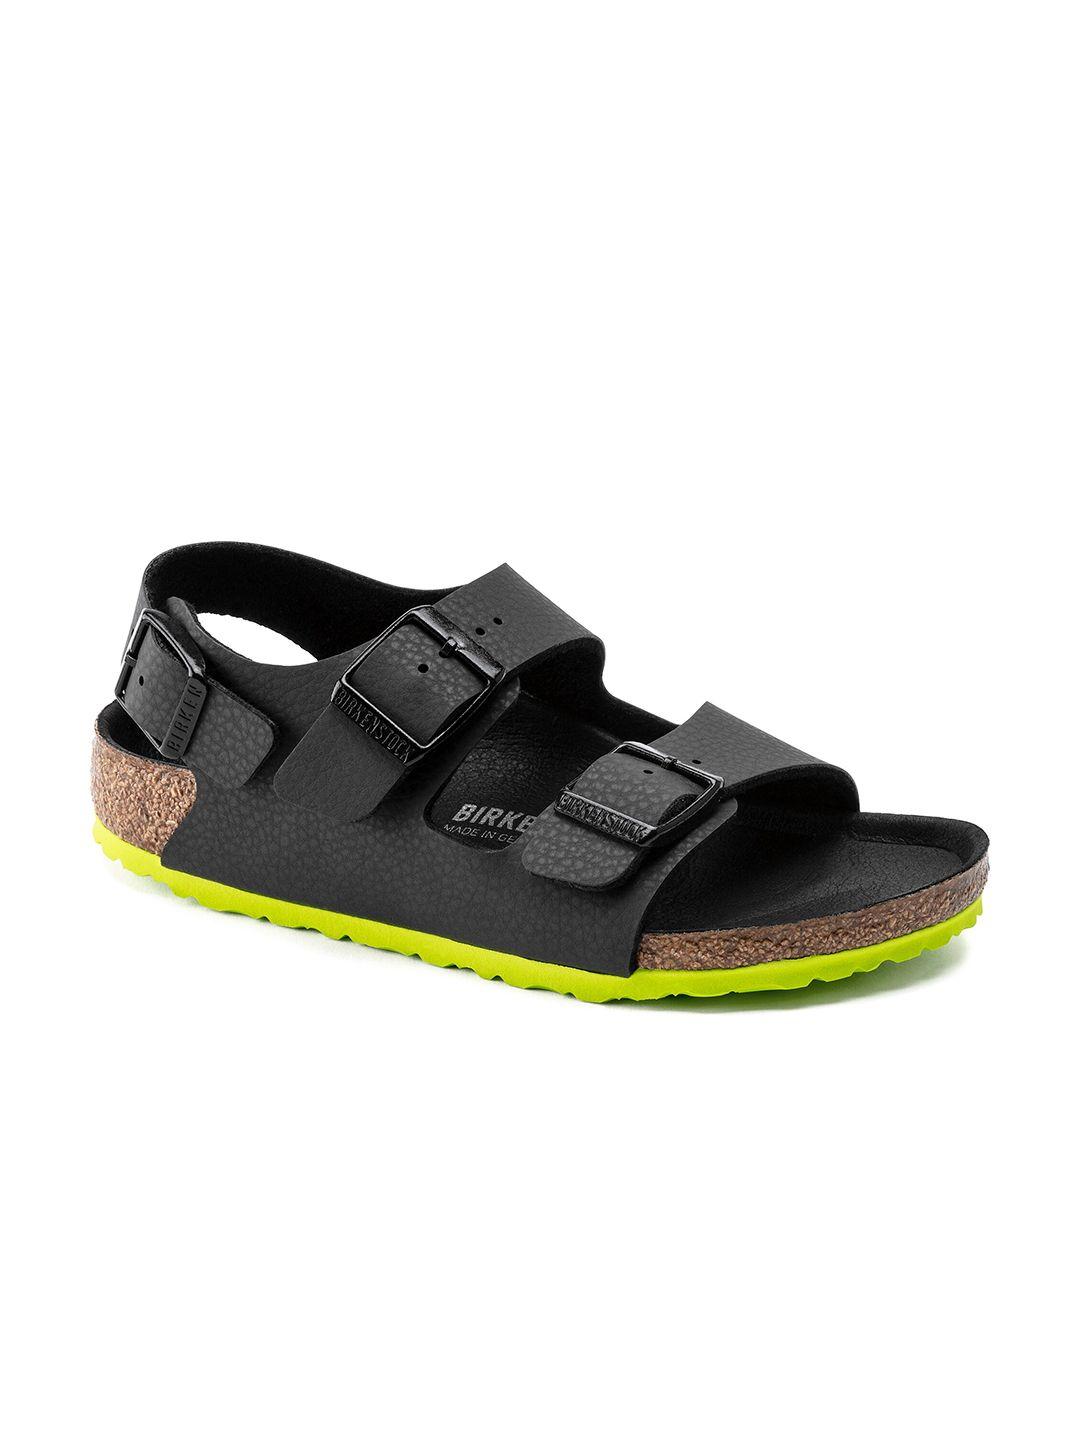 birkenstock boys black milano narrow width leather comfort sandals